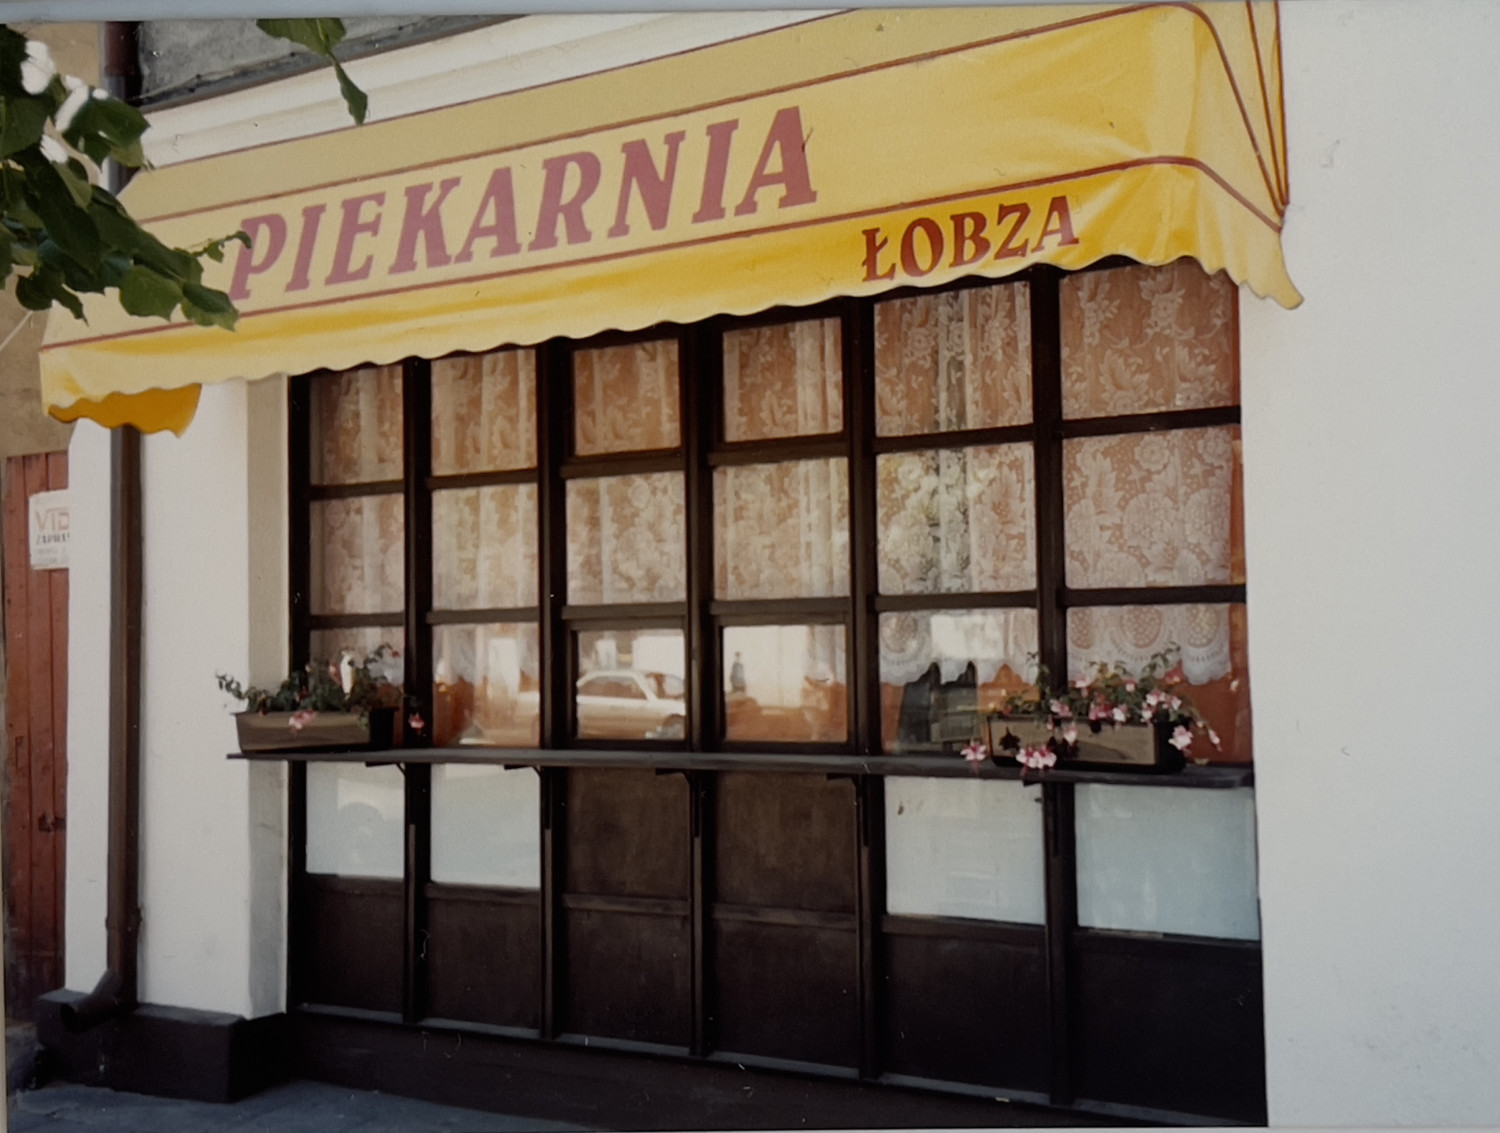 Witryna piekarni „Łobza” z początku lat 2000-tych